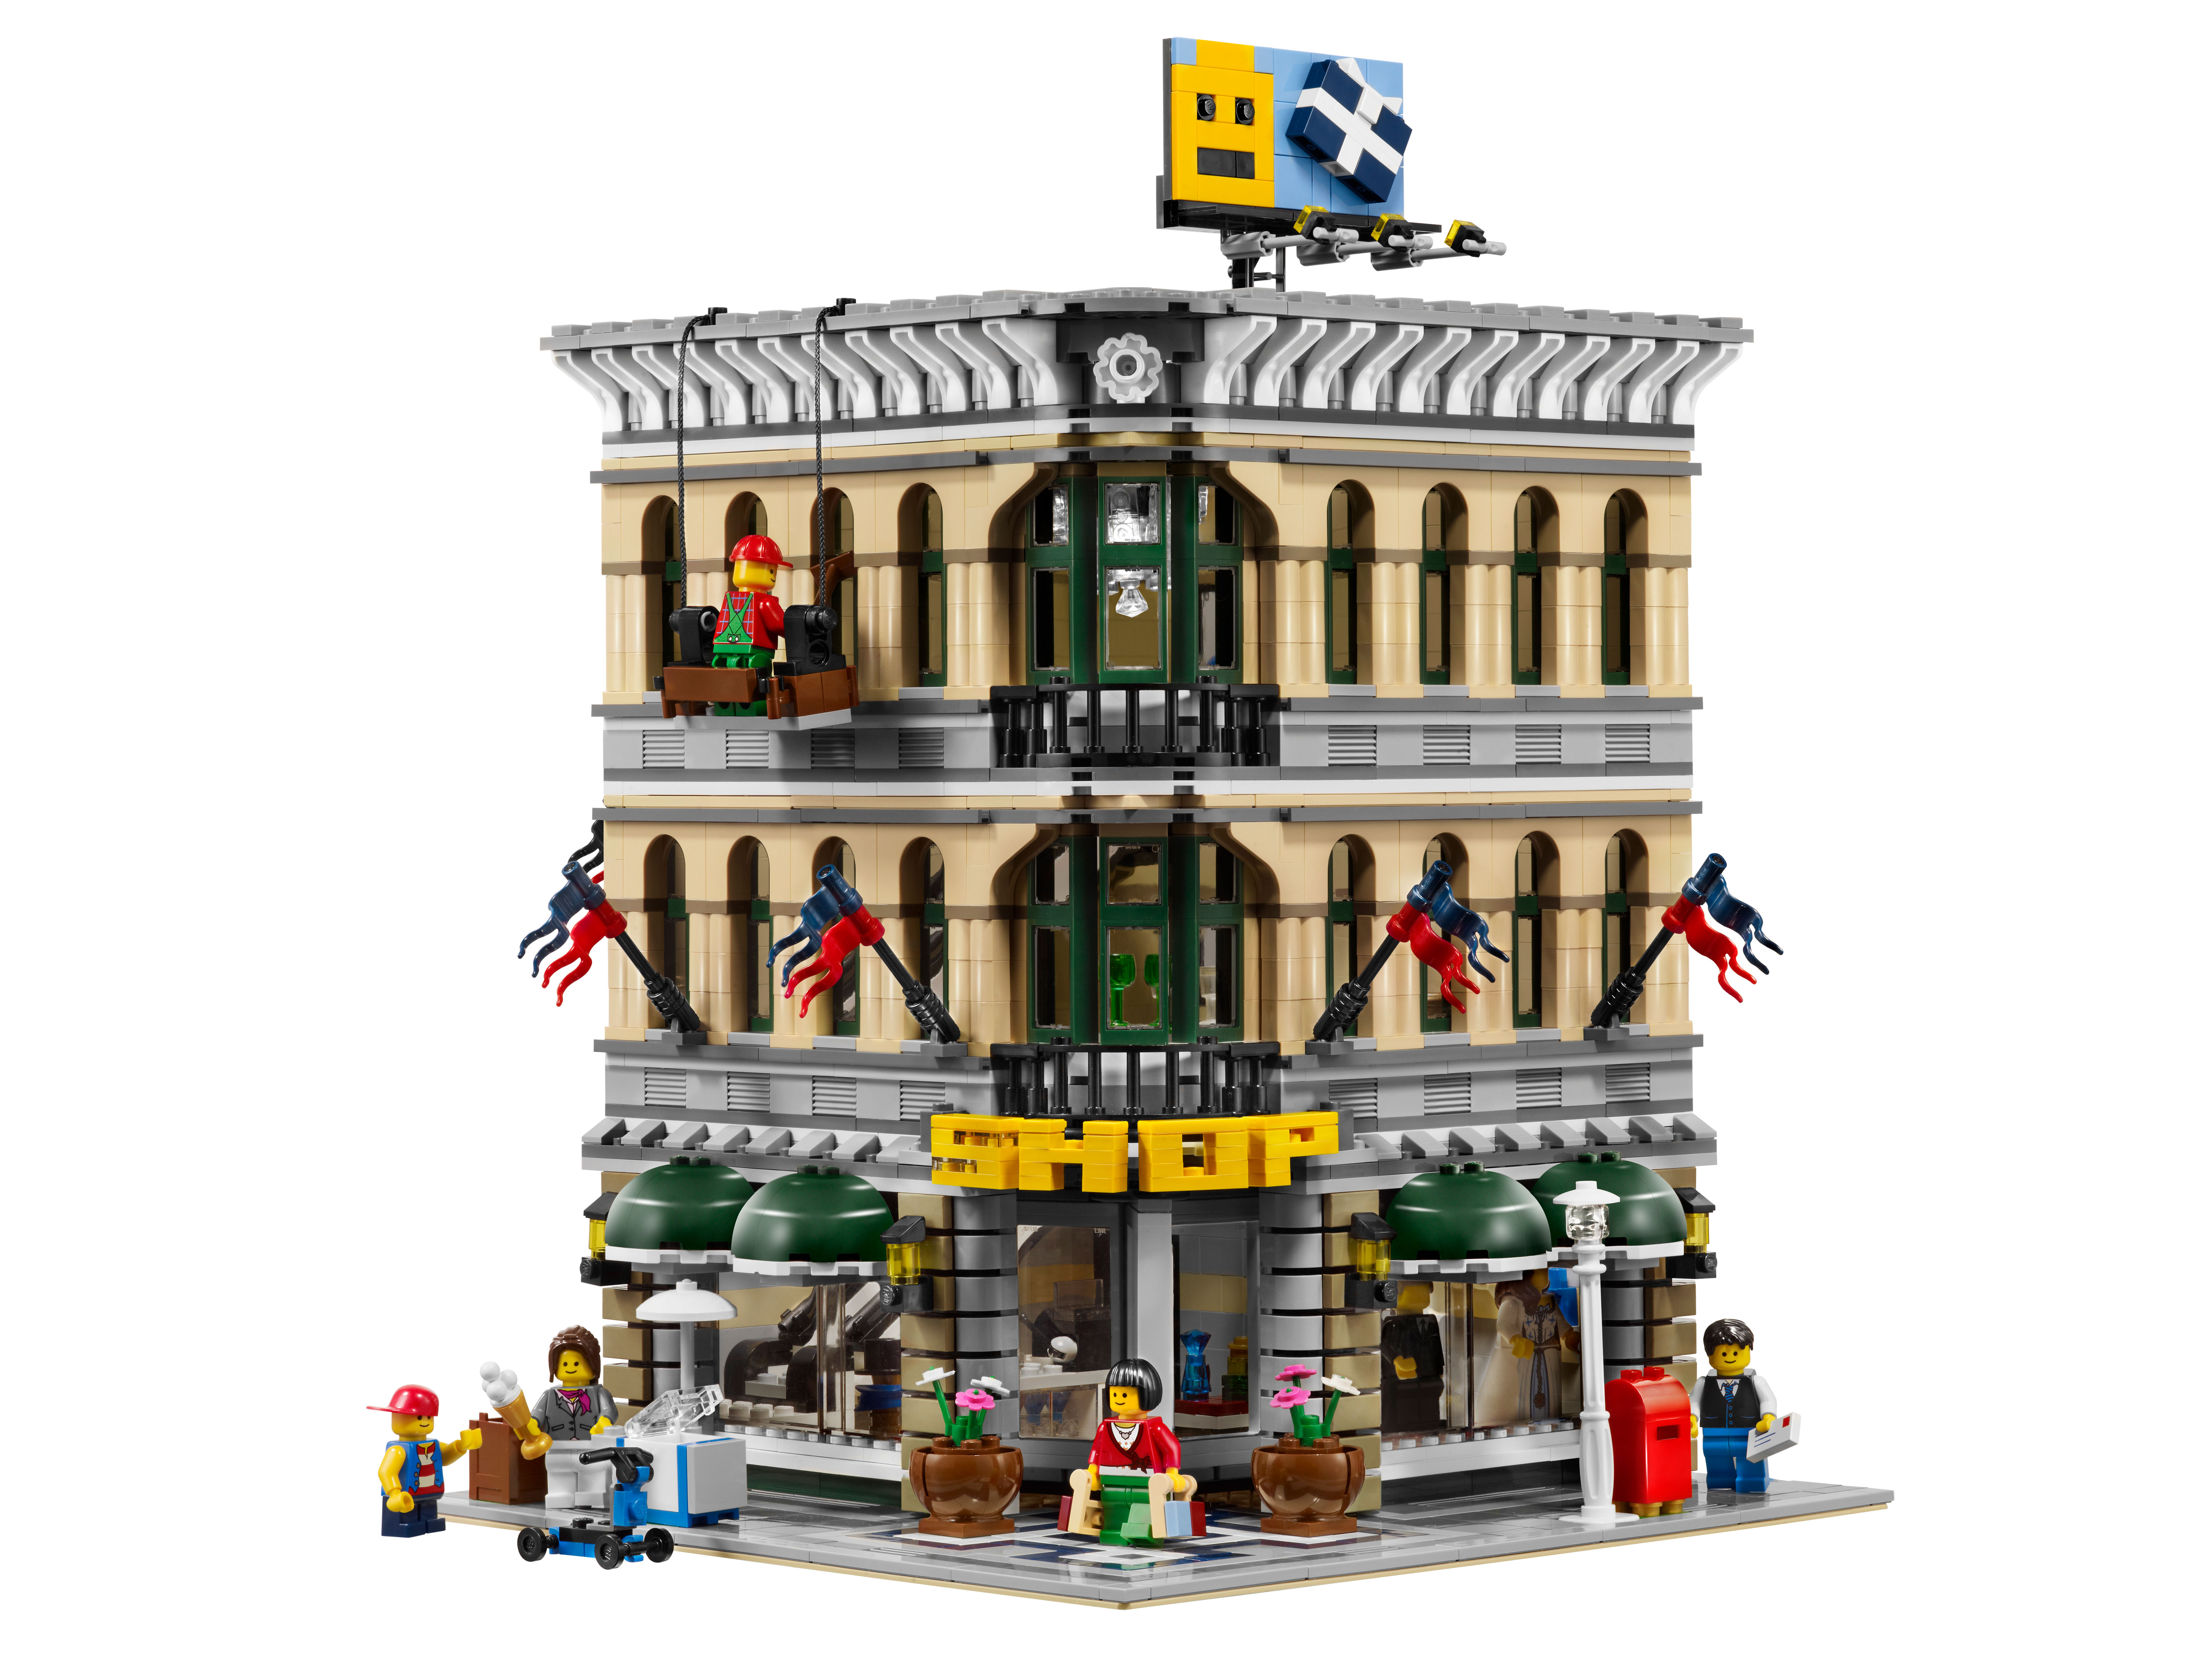 Купить Лего Сити Большой Набор